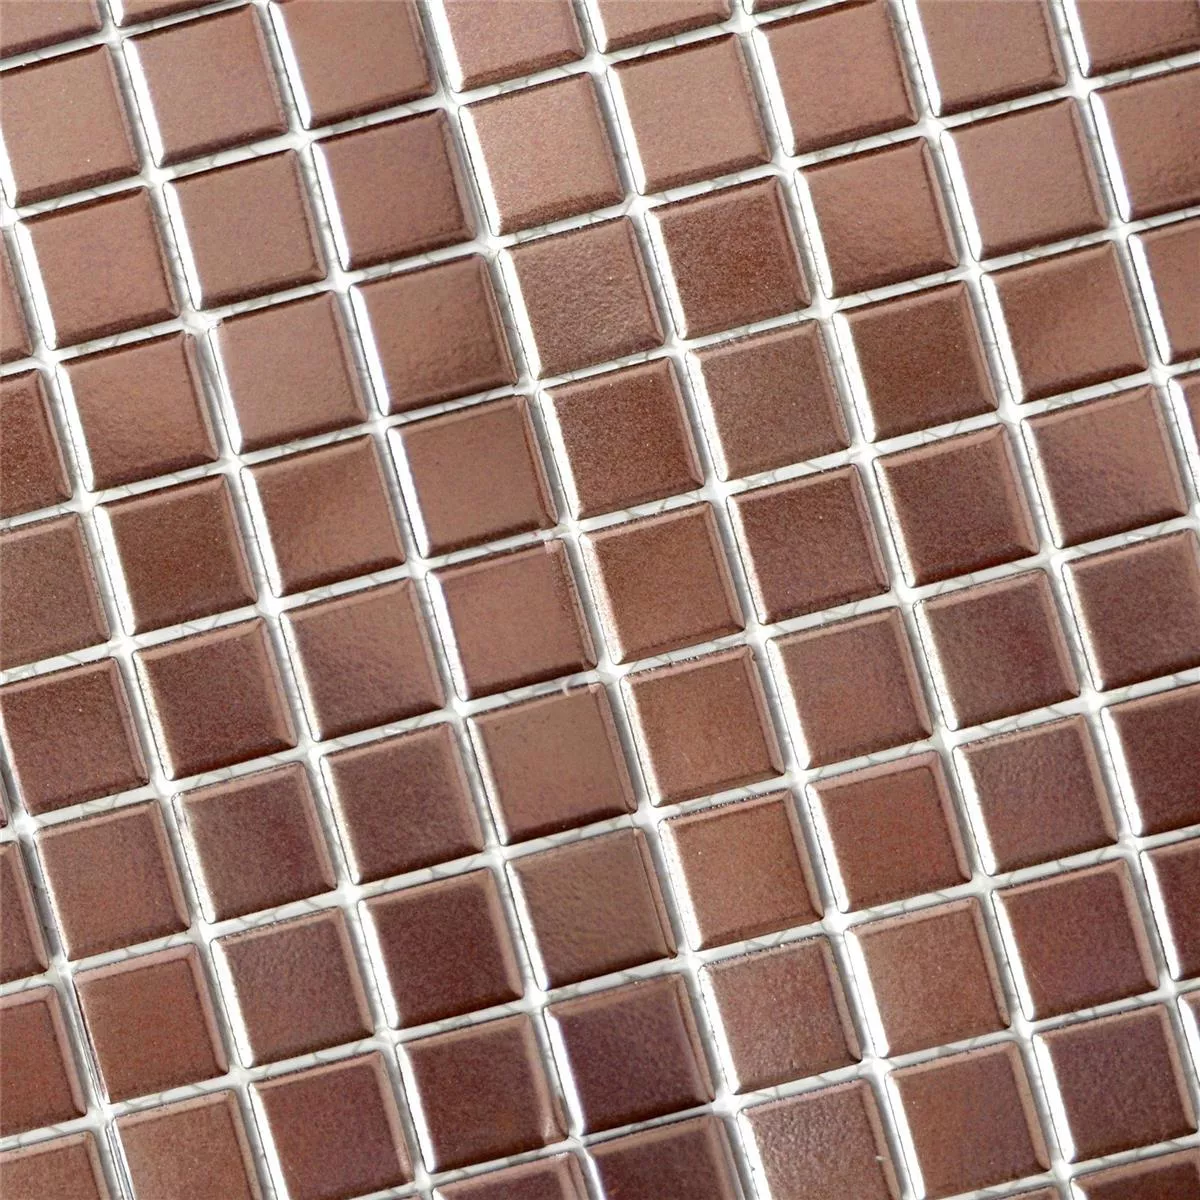 Sample Ceramic Mosaic Tiles Zando Copper Square